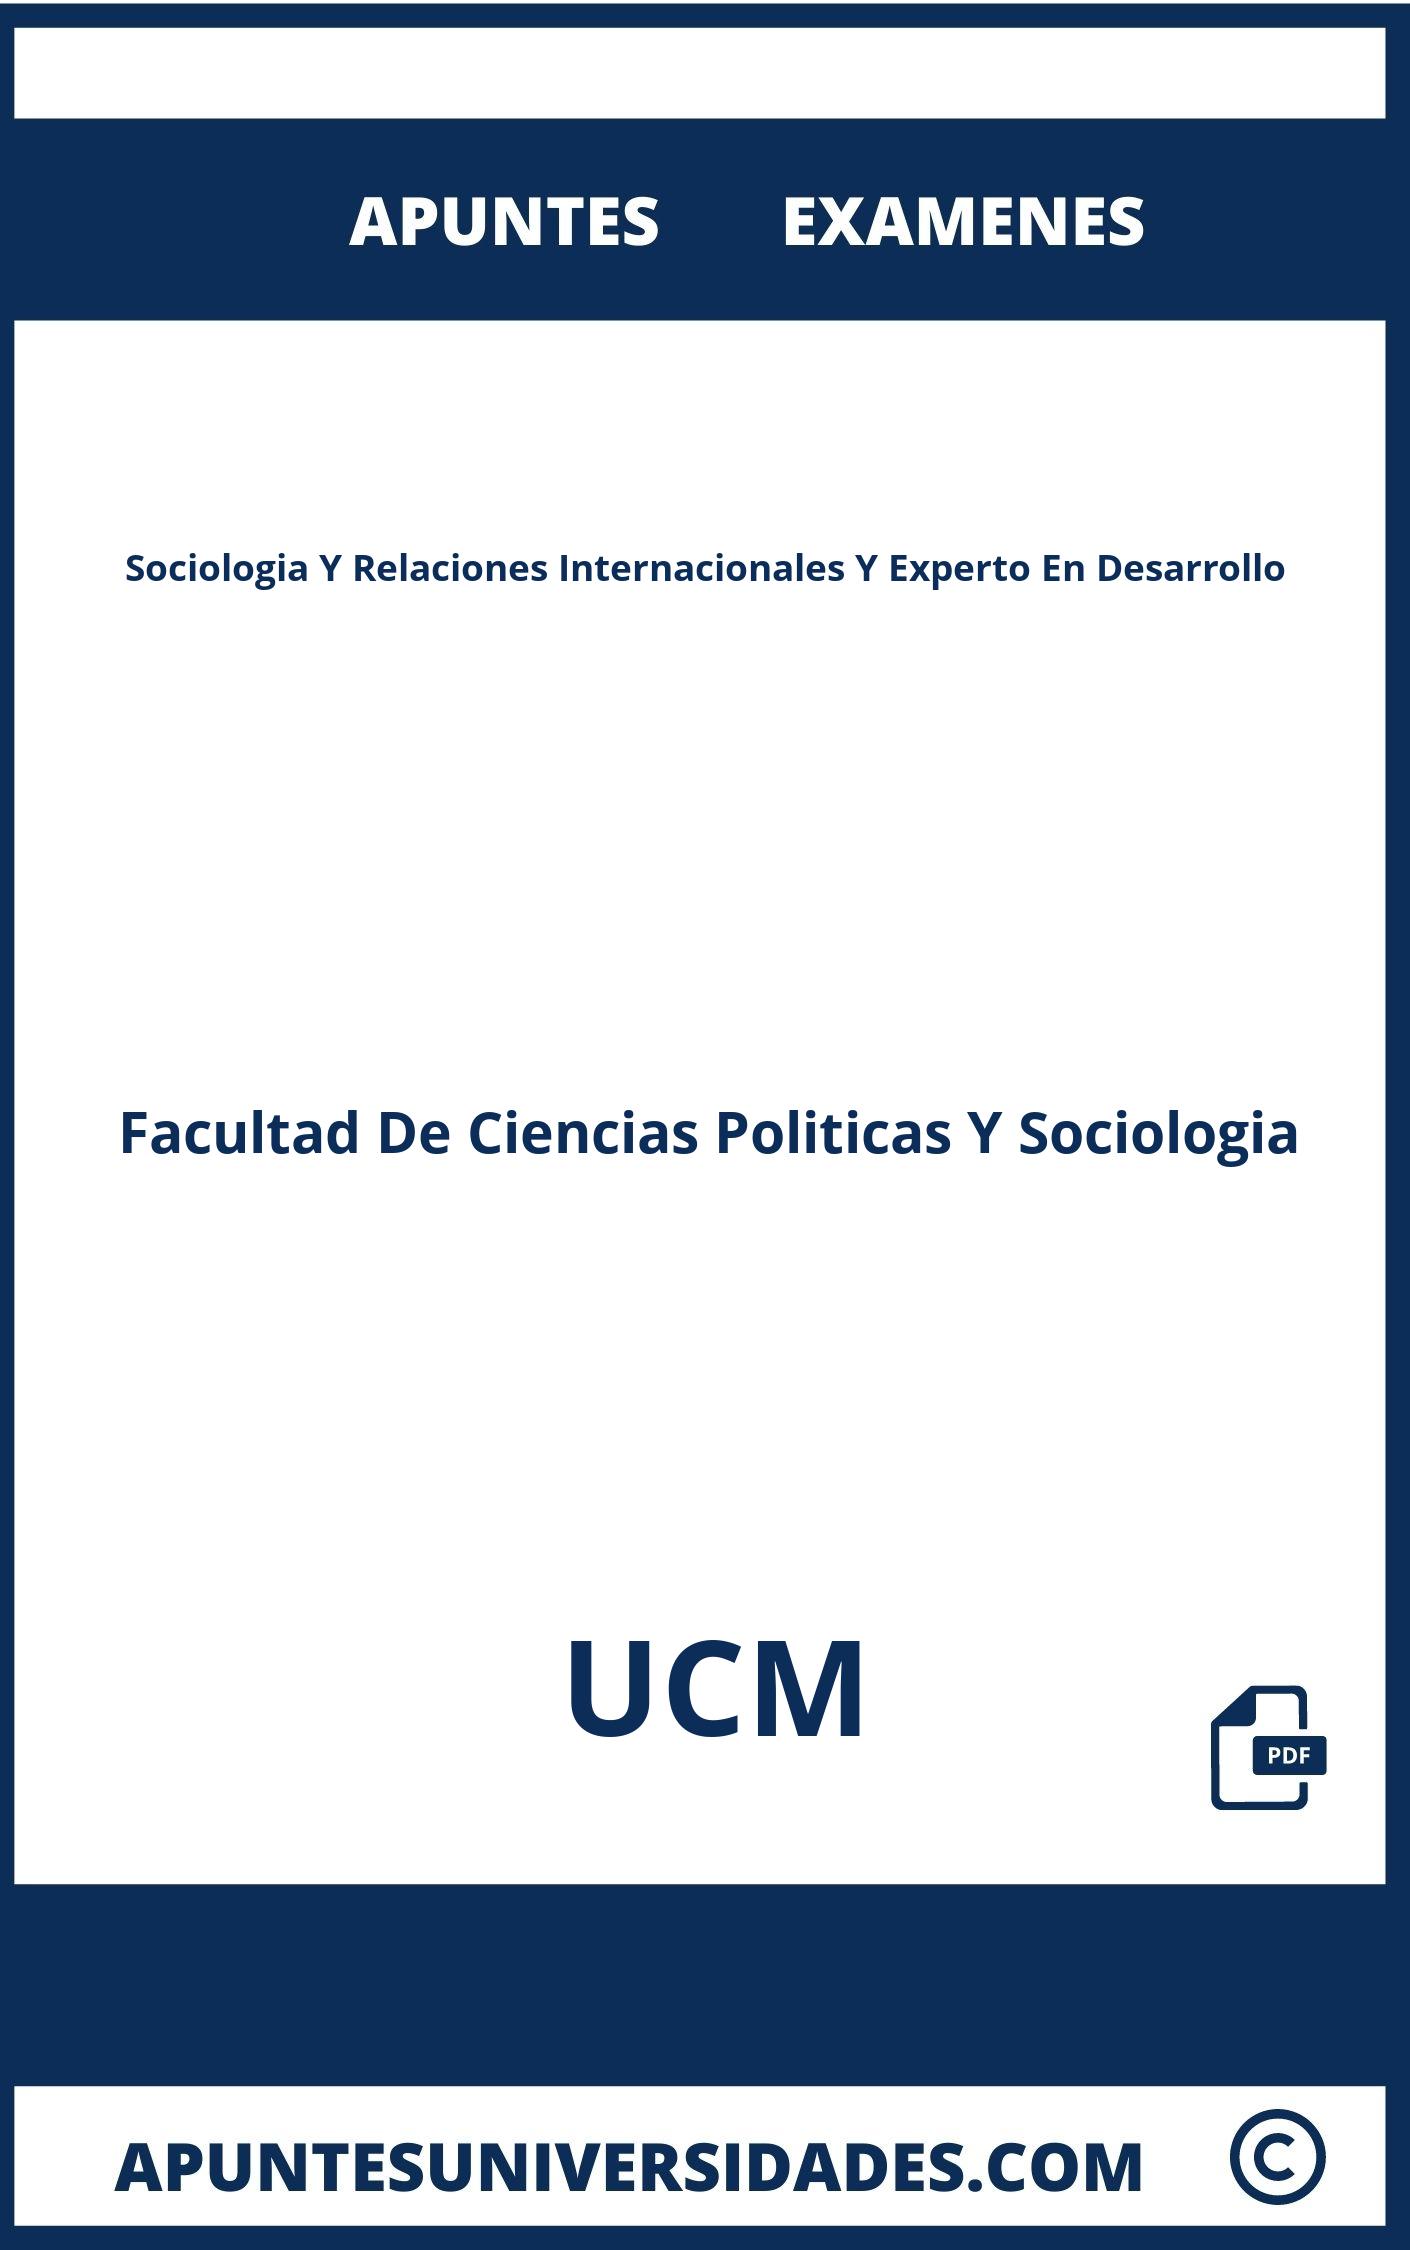 Apuntes Examenes Sociologia Y Relaciones Internacionales Y Experto En Desarrollo UCM